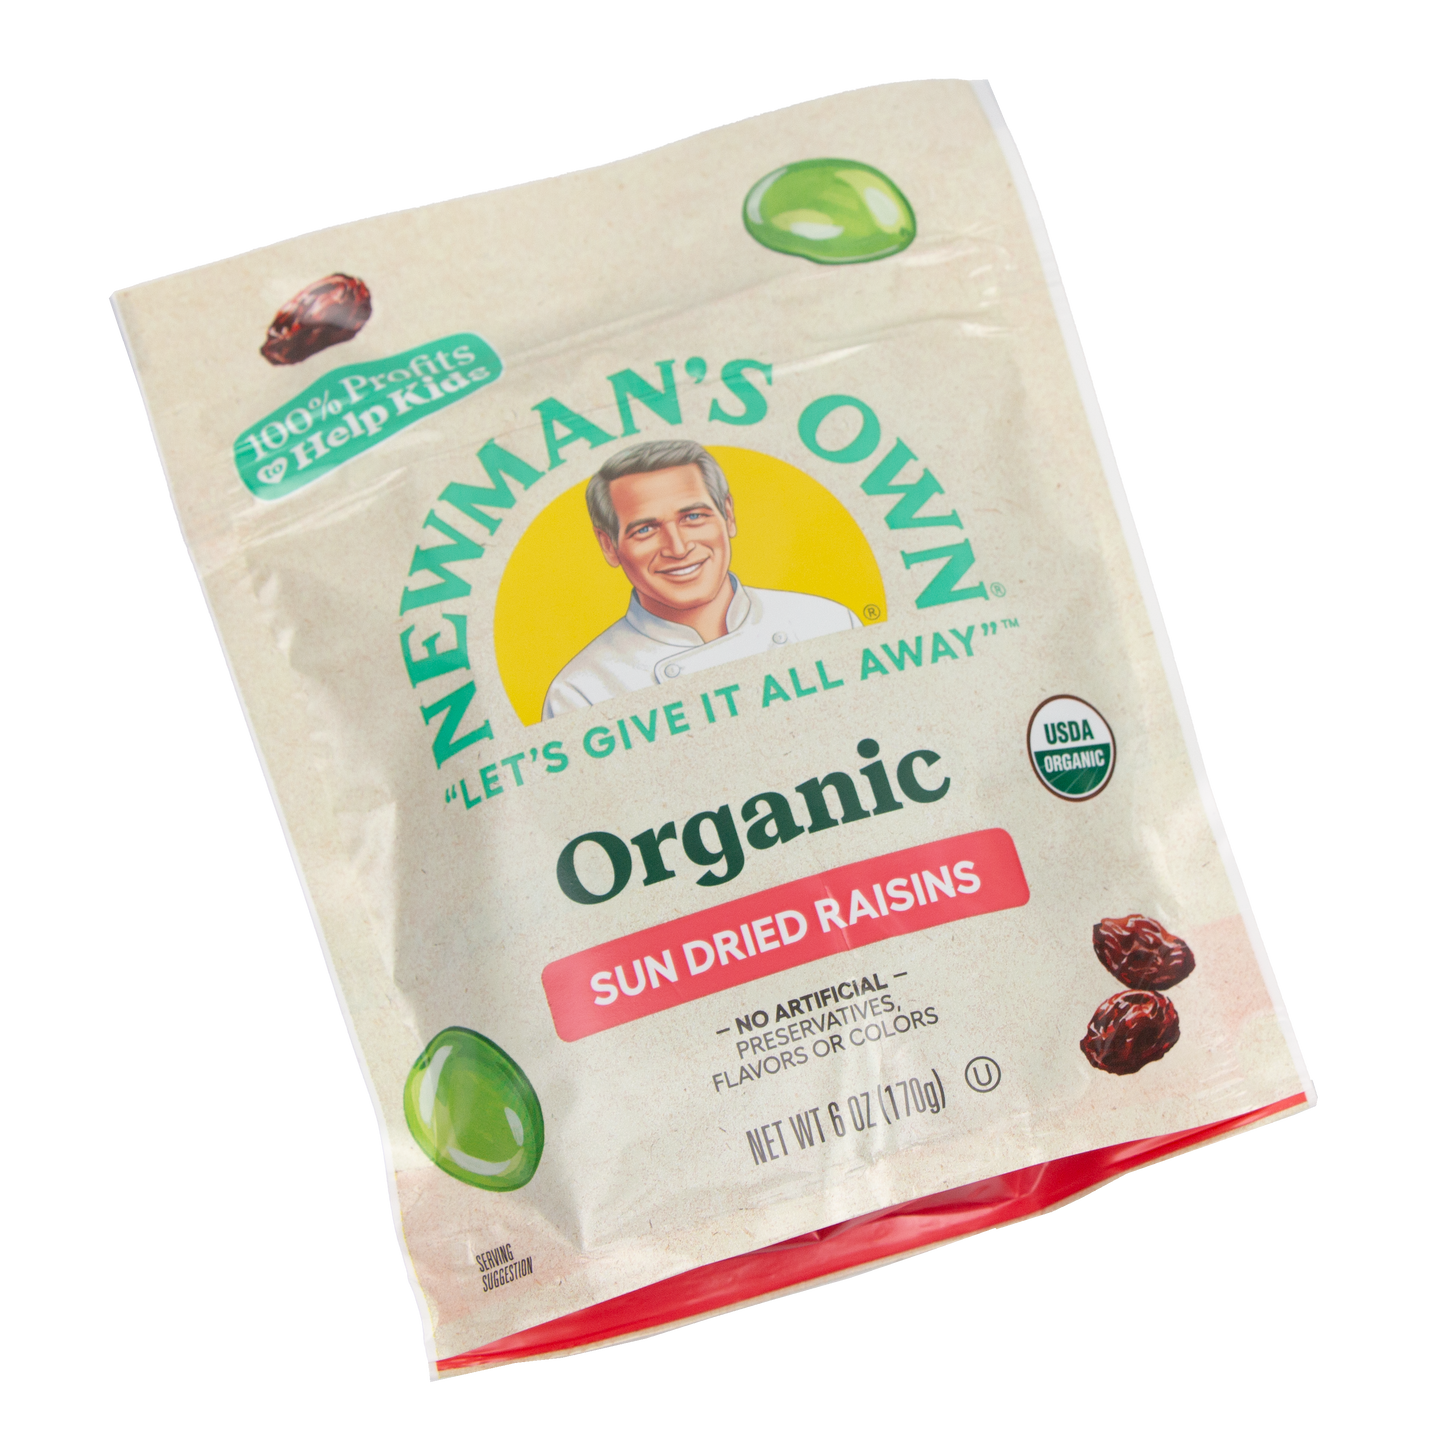 Newman's Own - Organic Sun Dried Raisins